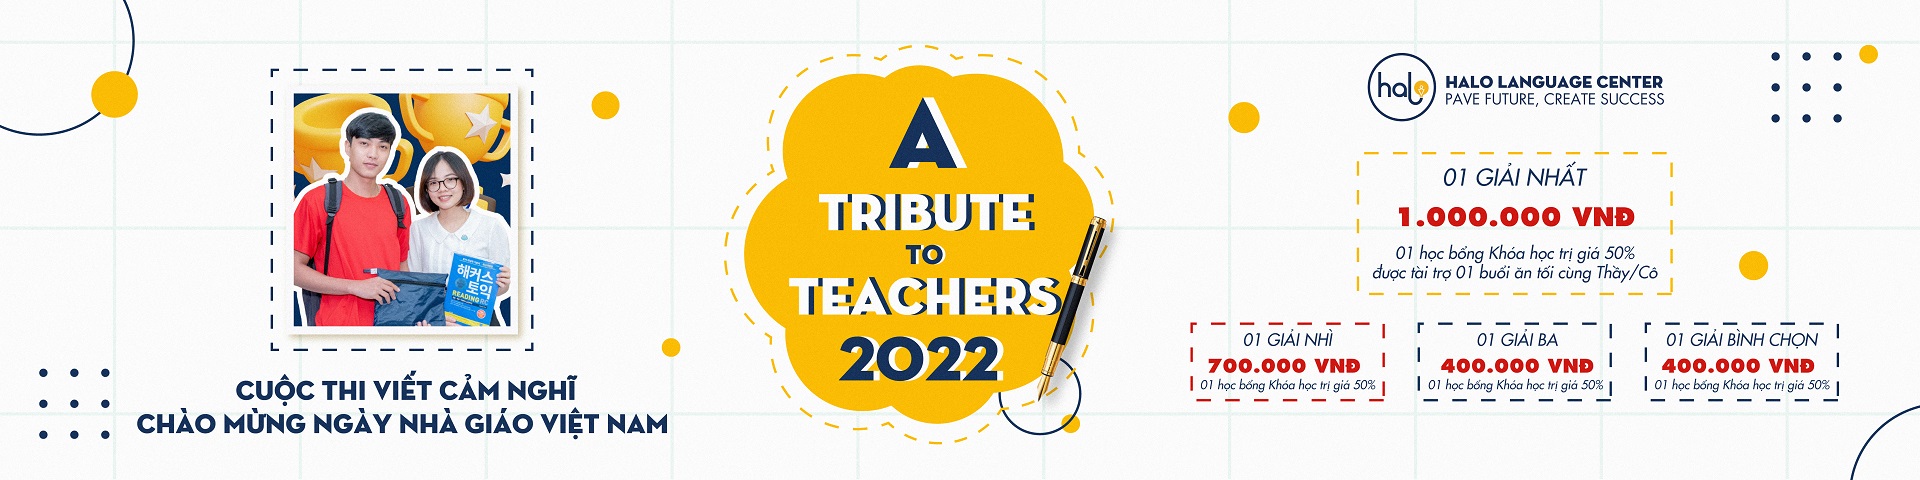 Cuộc Thi Viết “A Tribute To Teachers 2022”